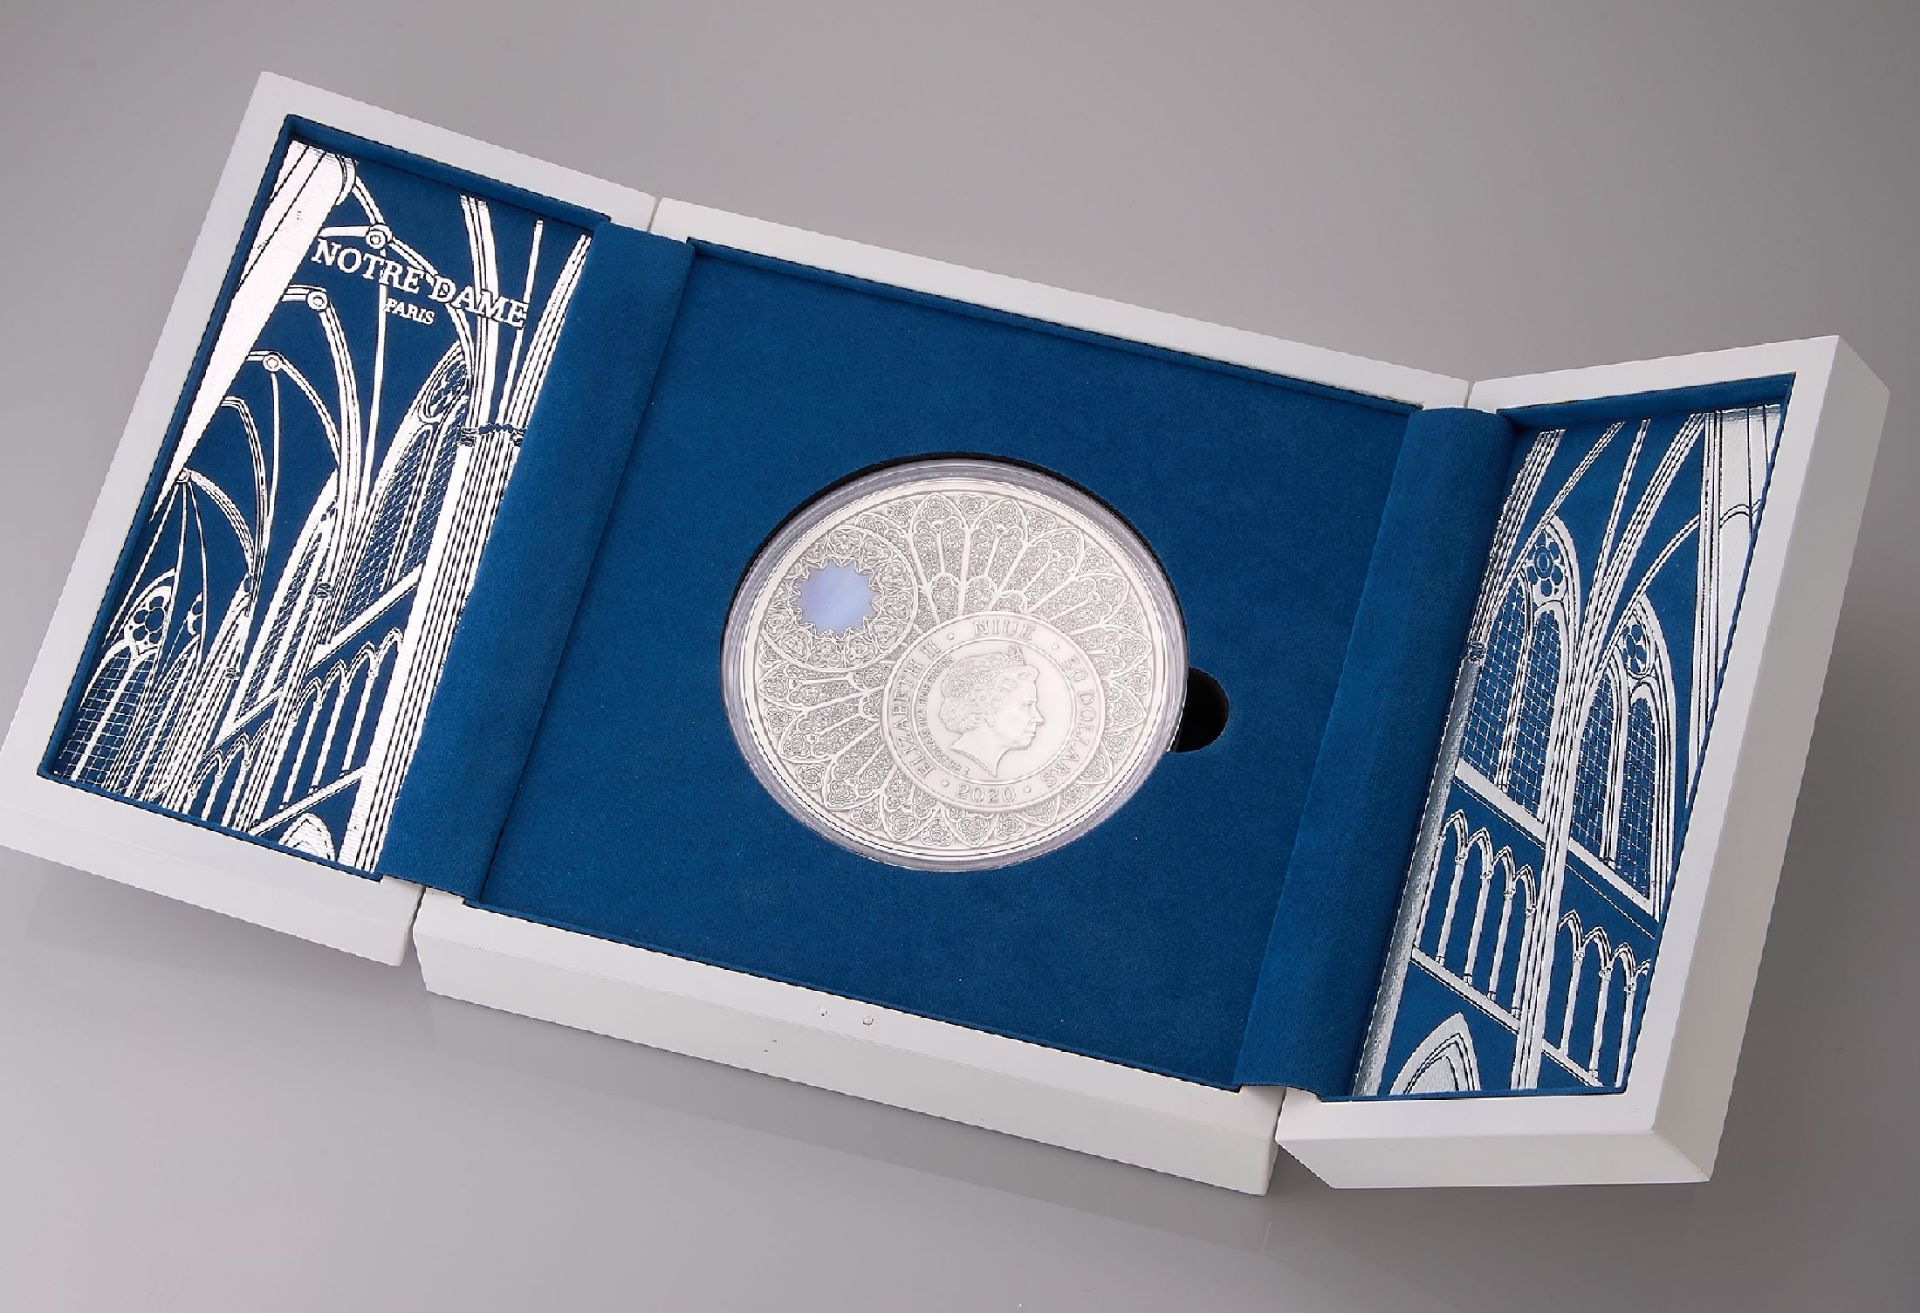 Gedenkmedaille 'Notre Dame', 999er Silber, 2020, zum